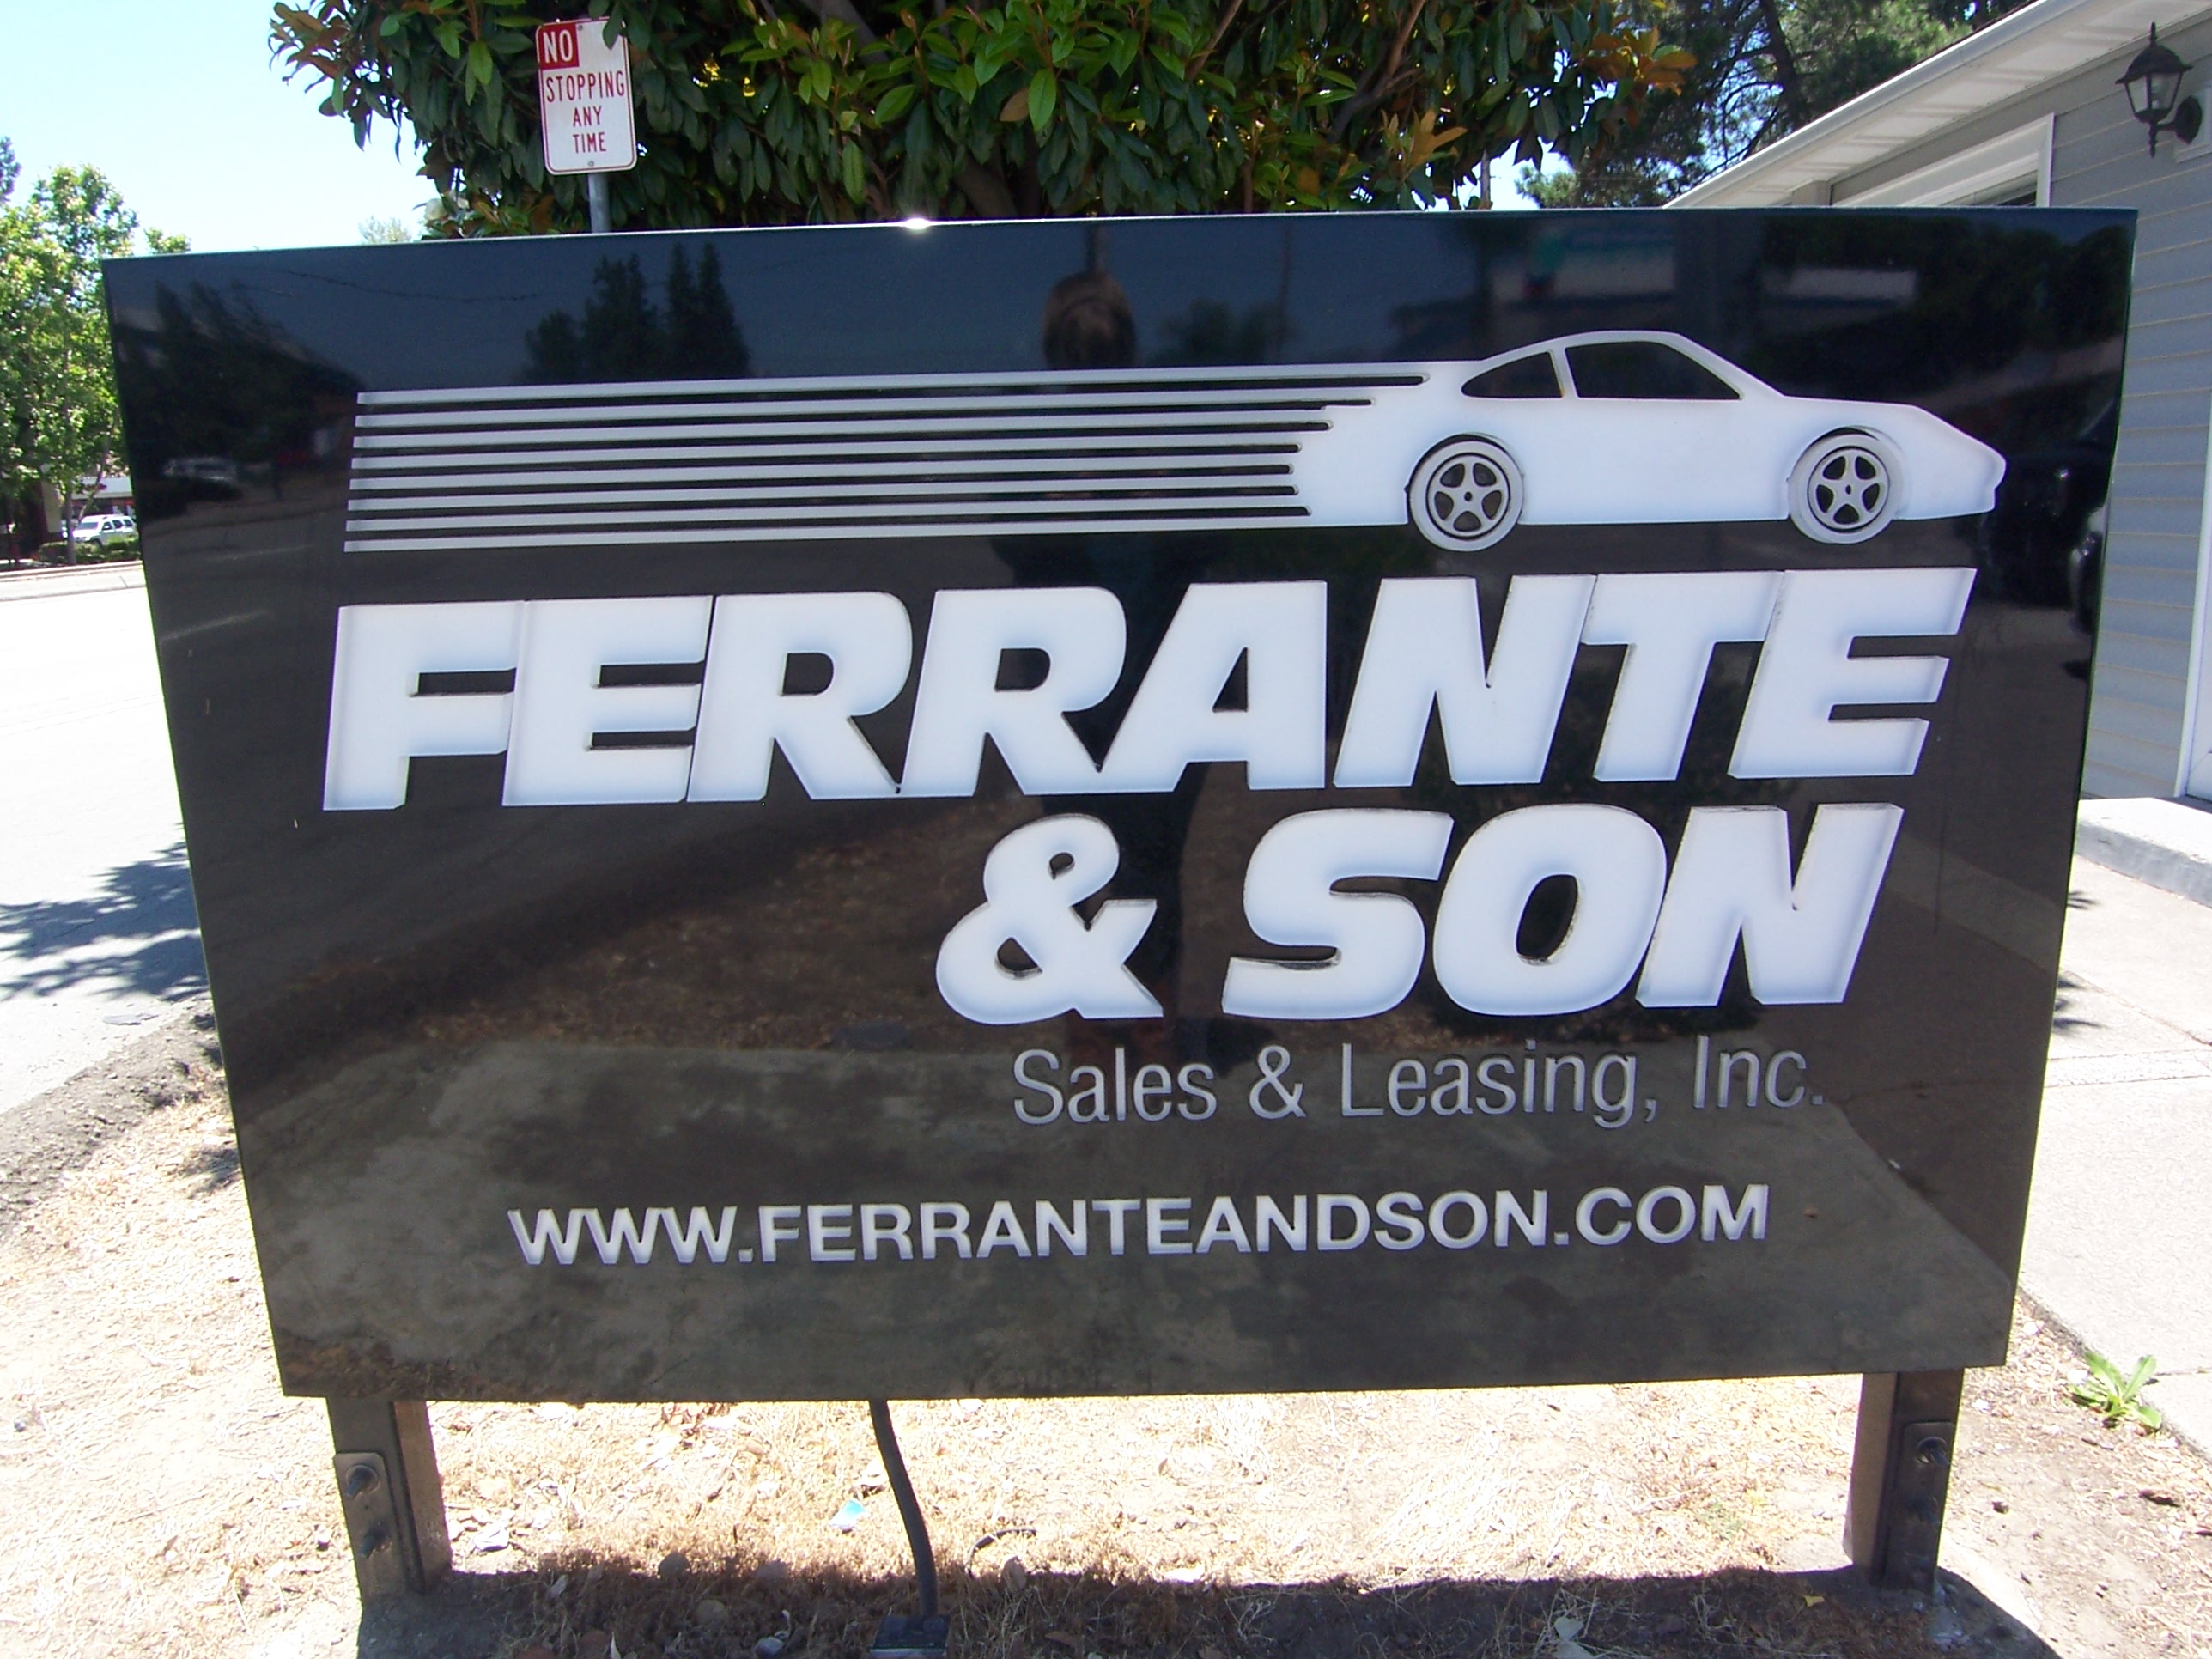 Ferrante, Comprar Novos & Usados